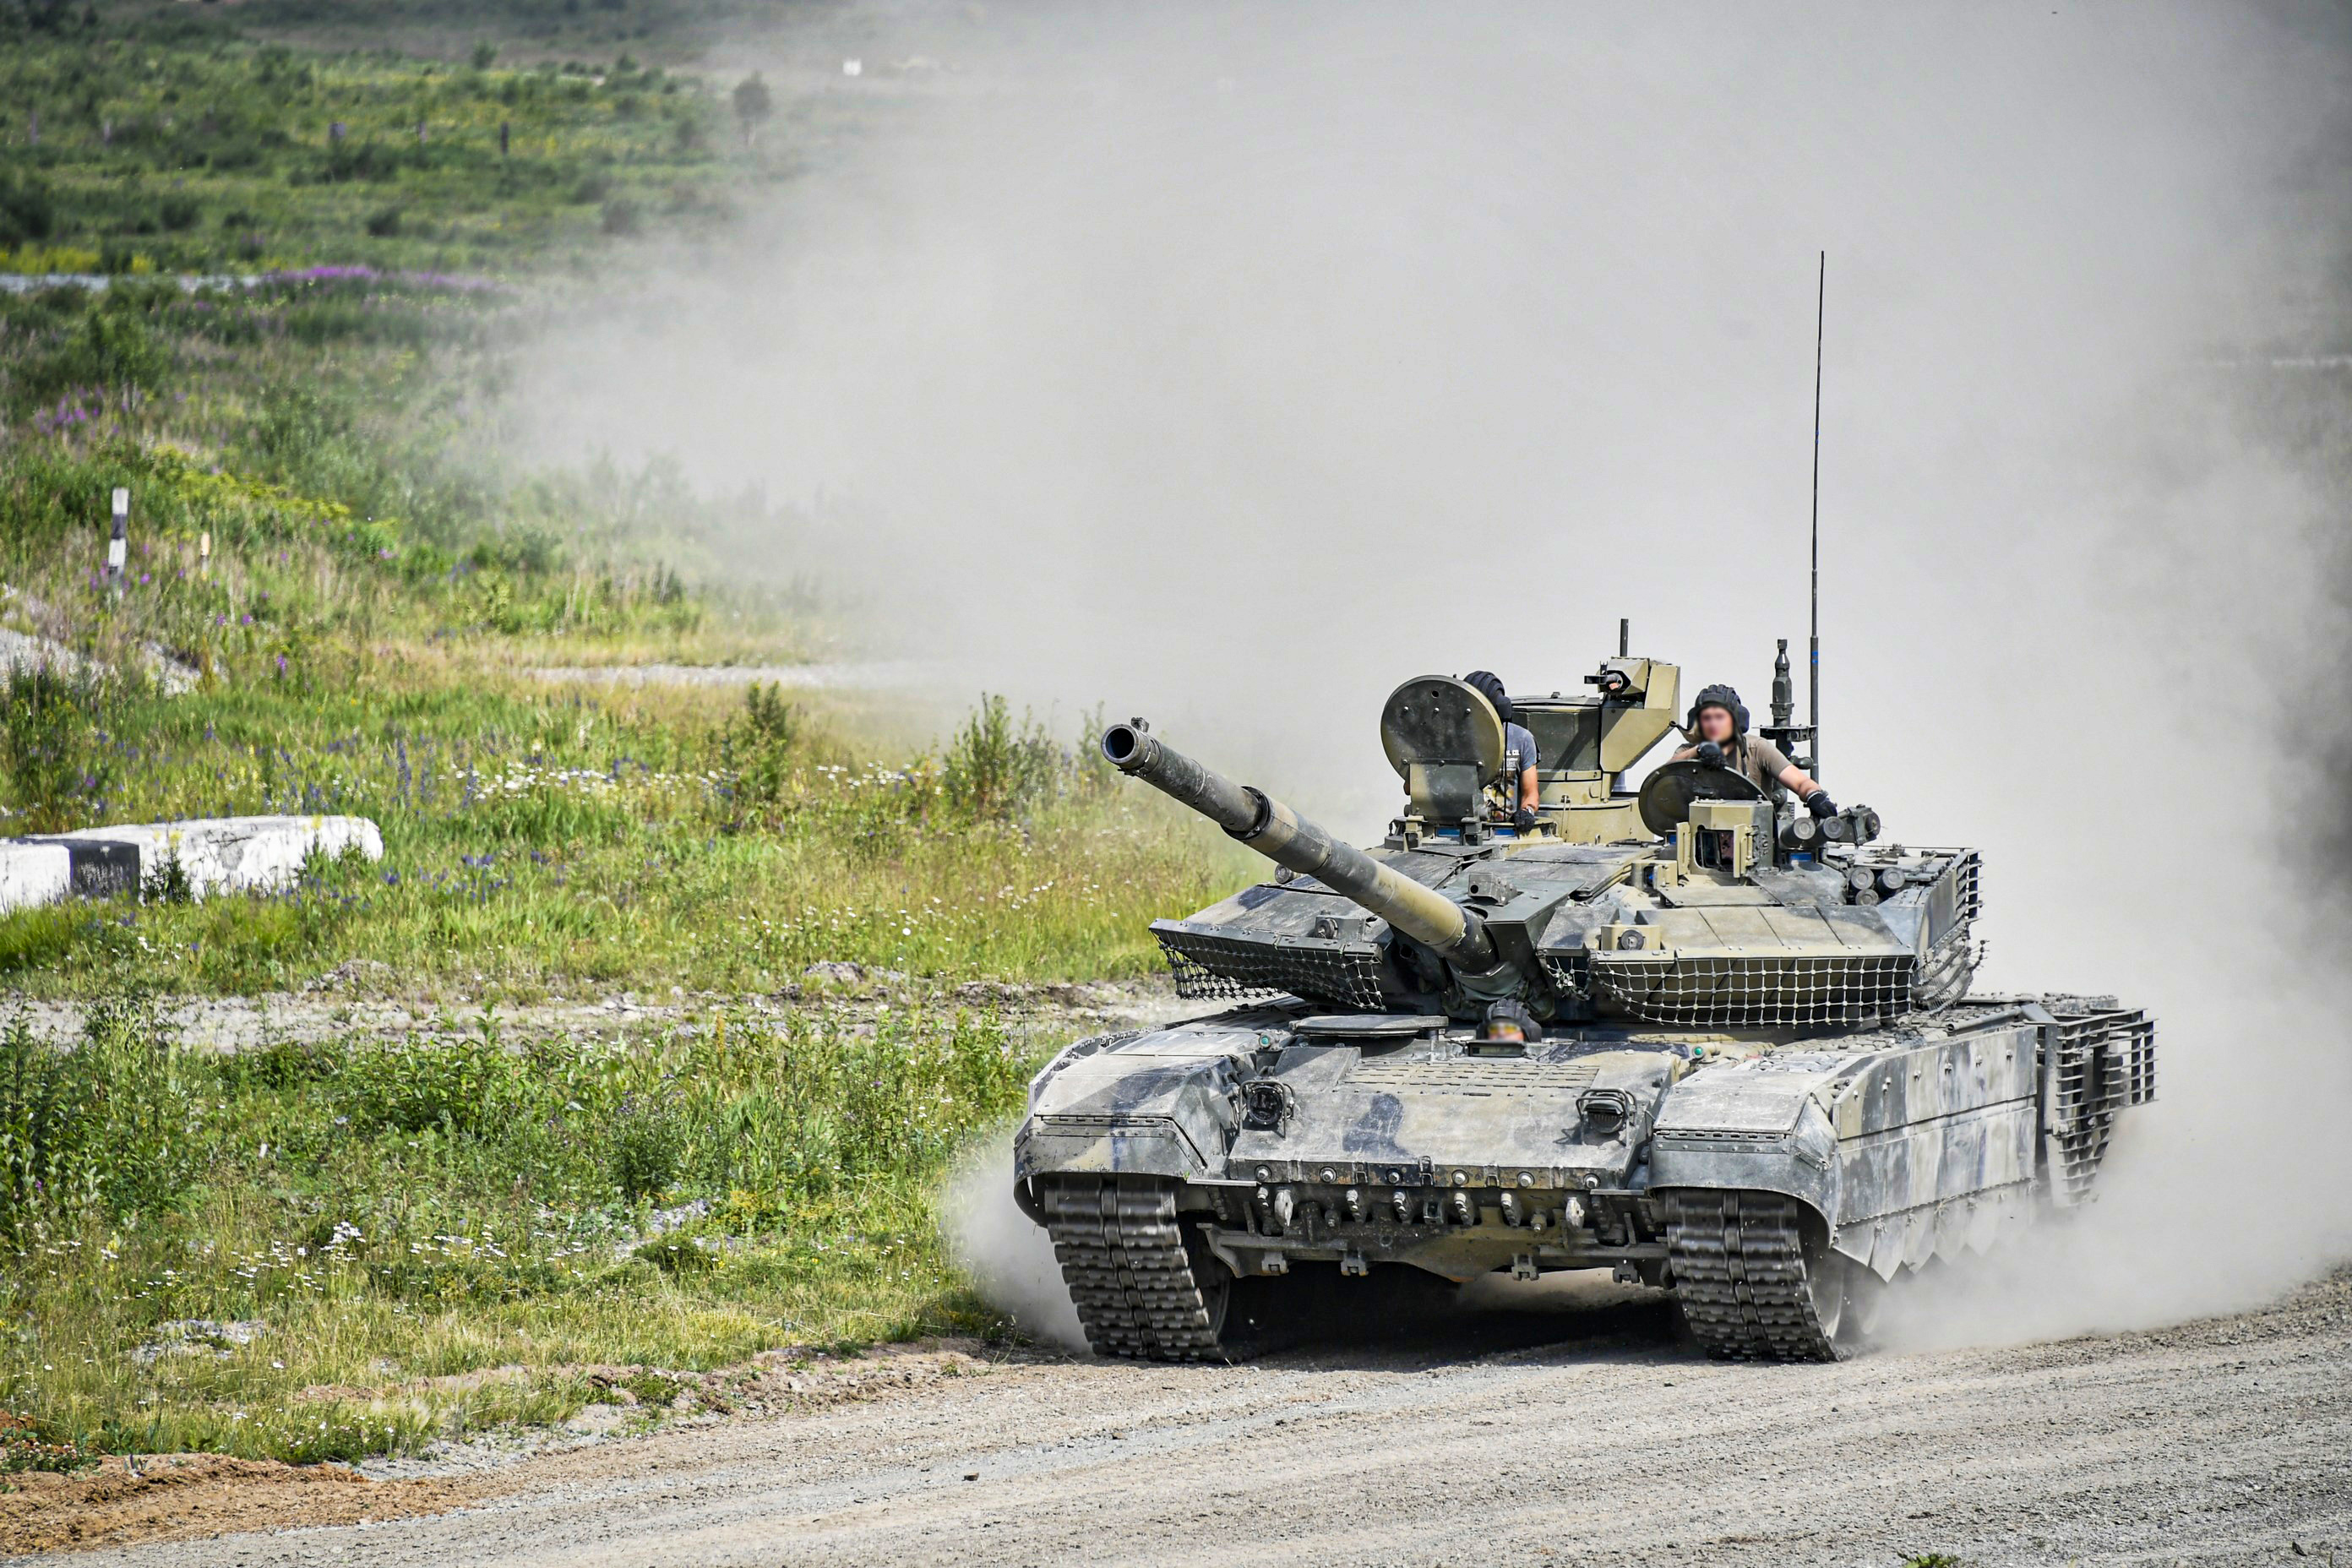 T72B3 aux stéroïdes - Un char ukrainien a parlé des caractéristiques du rare char russe T-90M "Proryv".